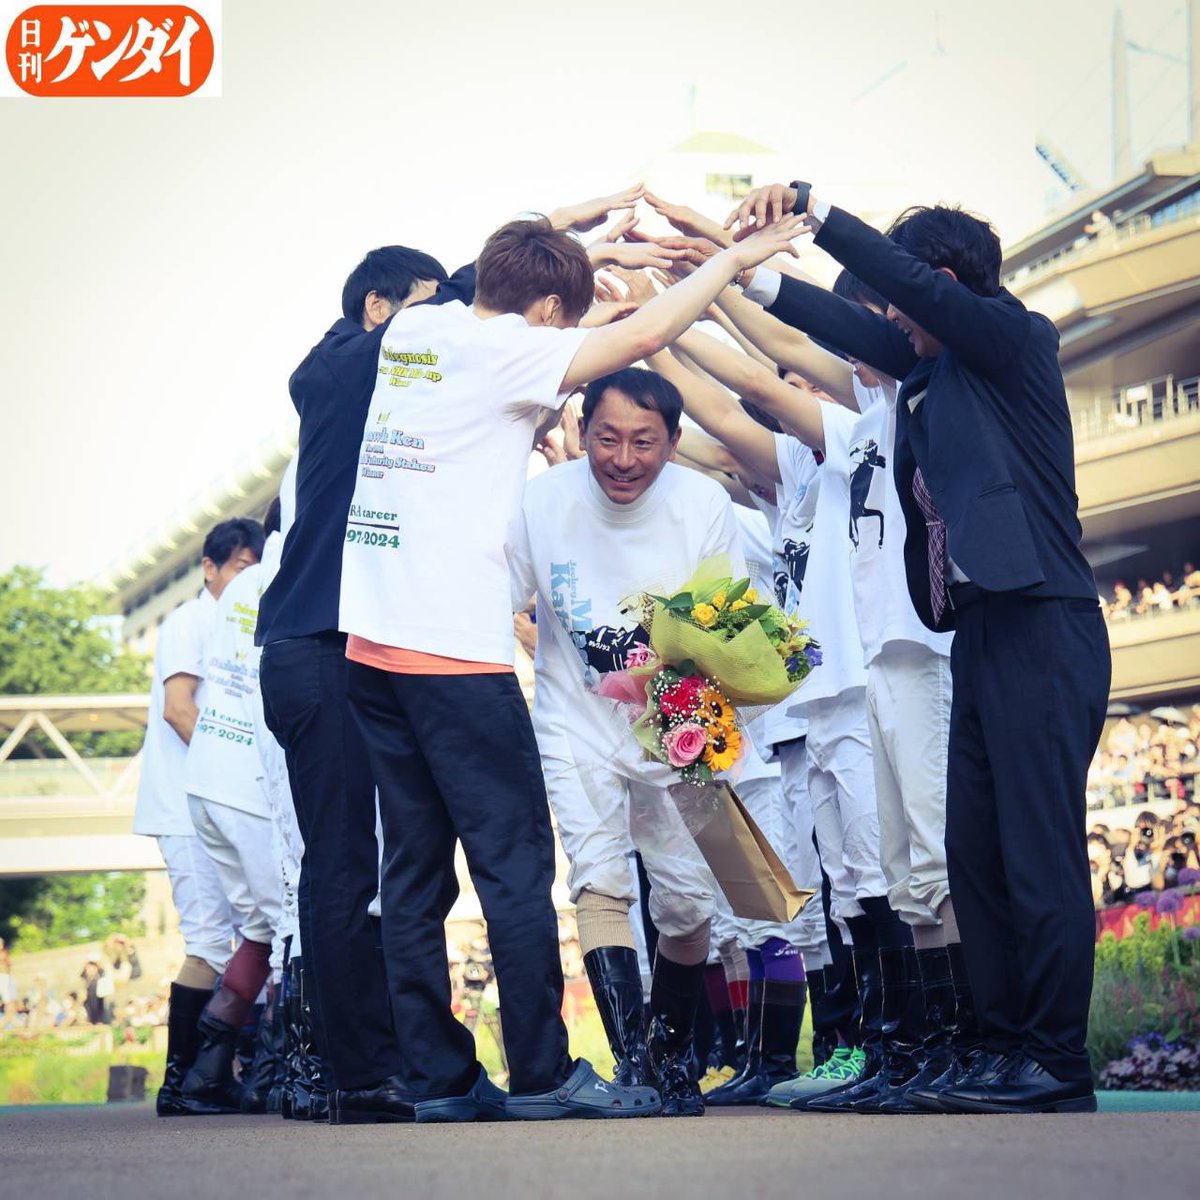 勝浦正樹騎手、暖かい引退式となりました。
#勝浦正樹 #東京競馬場 #引退式